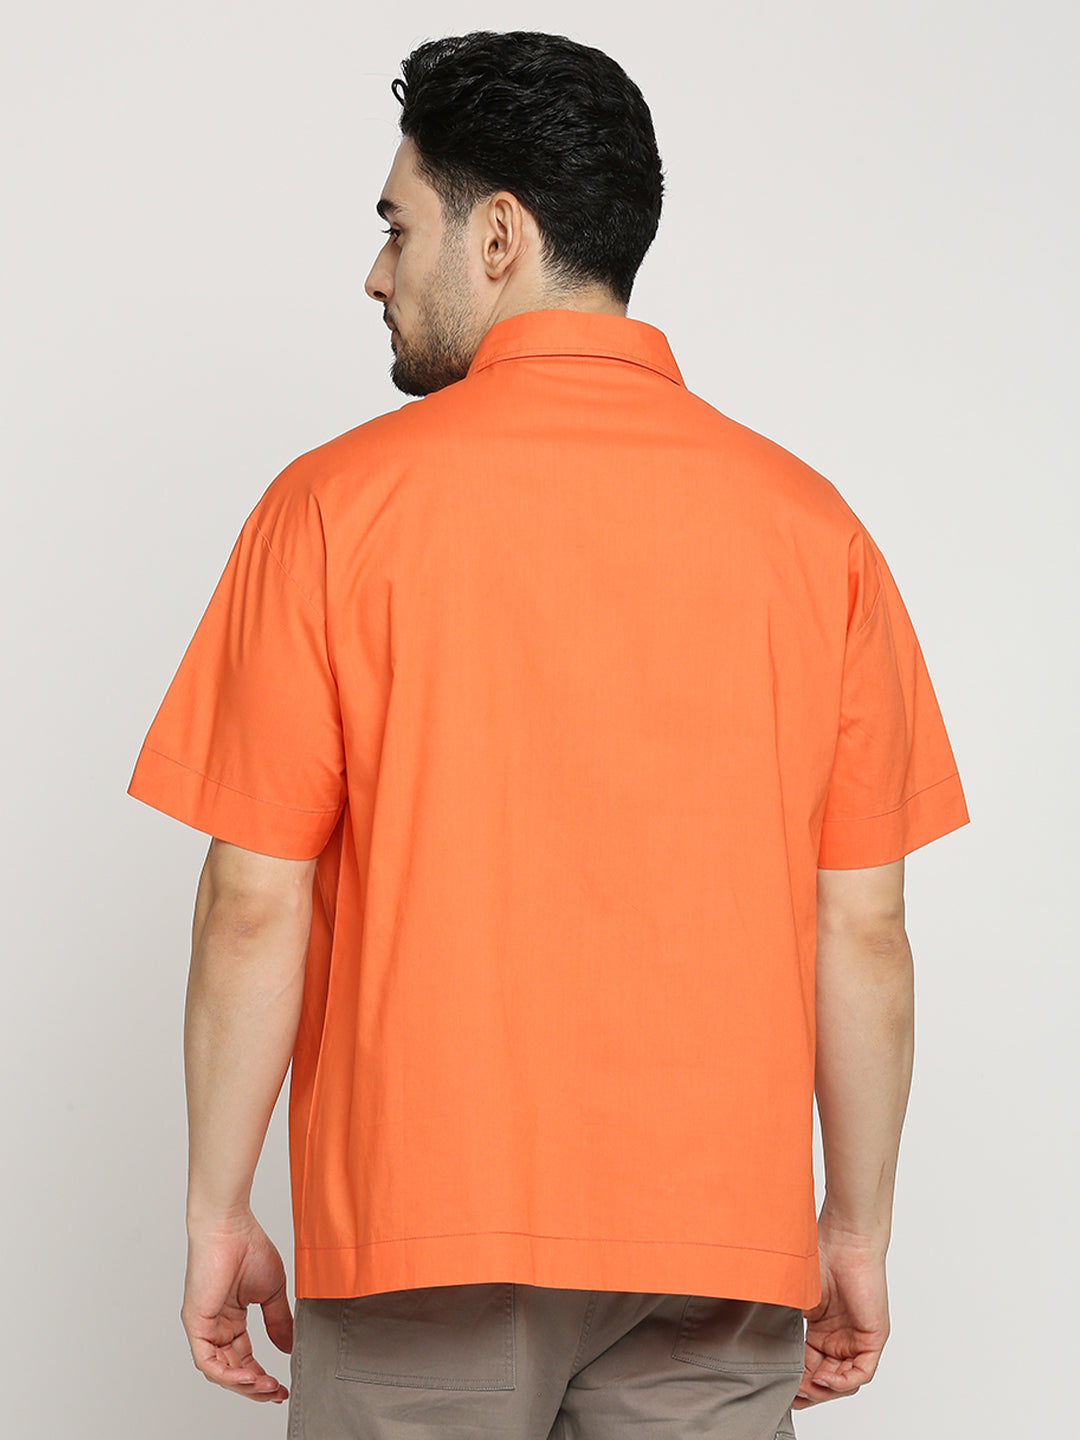 Buy BLAMBLACK Men's Colourblocked Poplin Oversized Fit Half Sleeves Spread Collar Shirt